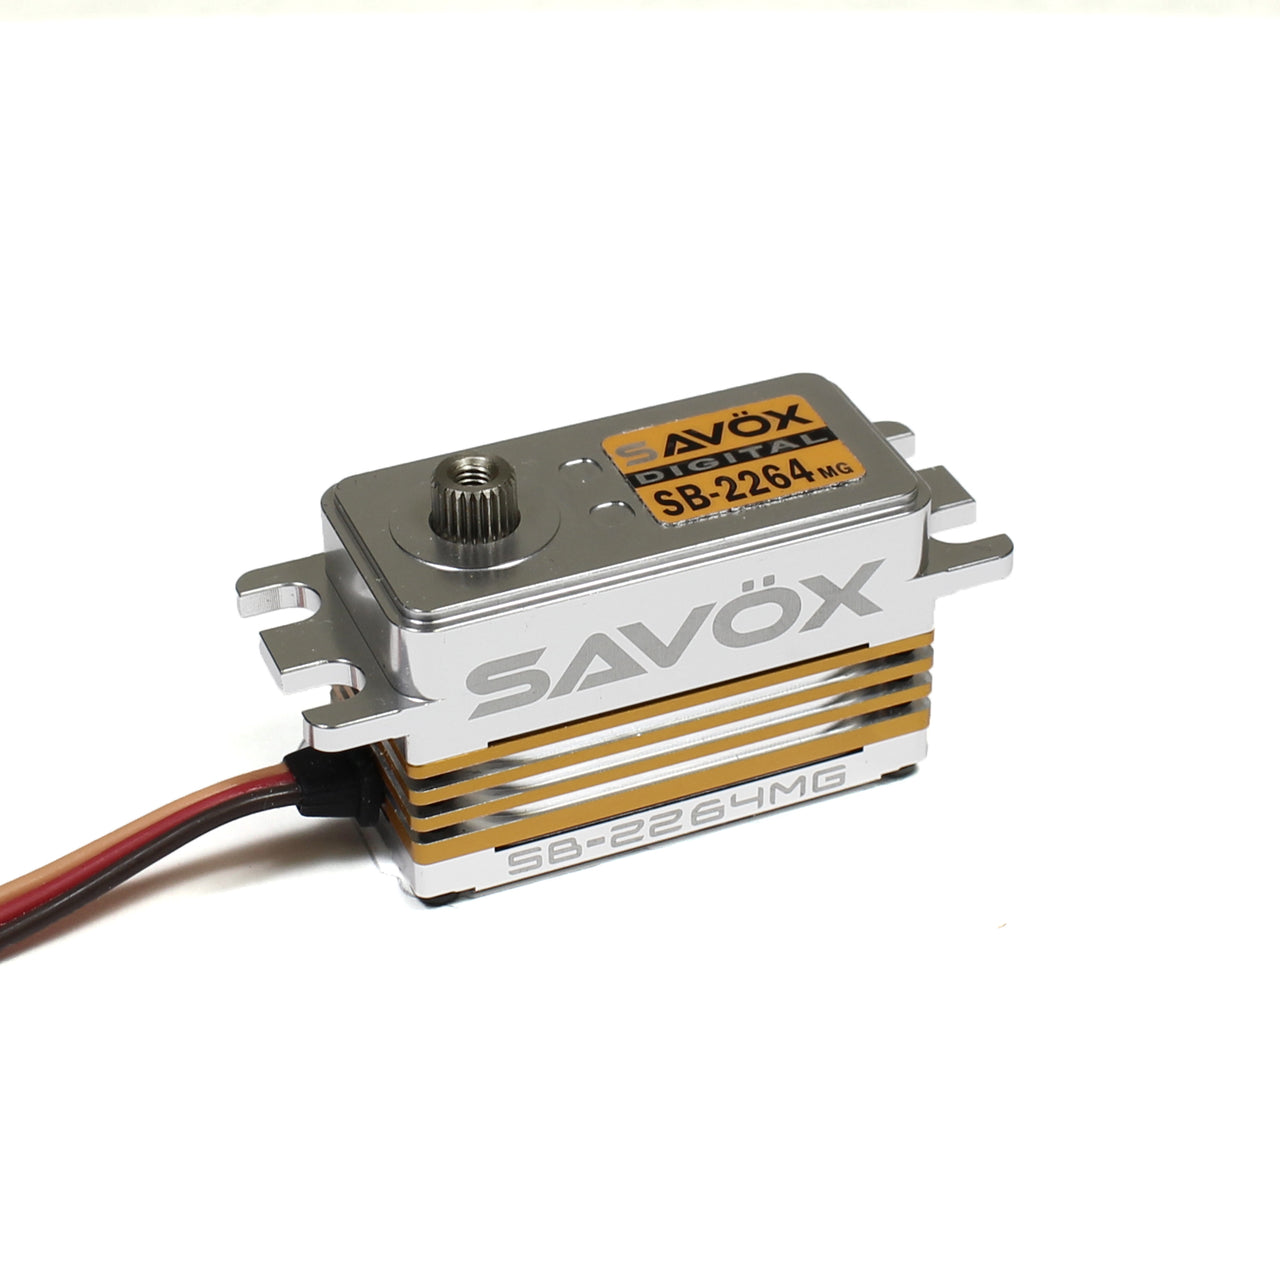 SAVSB2264MG Servo sin escobillas de alto voltaje y perfil bajo 0,085 s/208,3 oz a 7,4 V